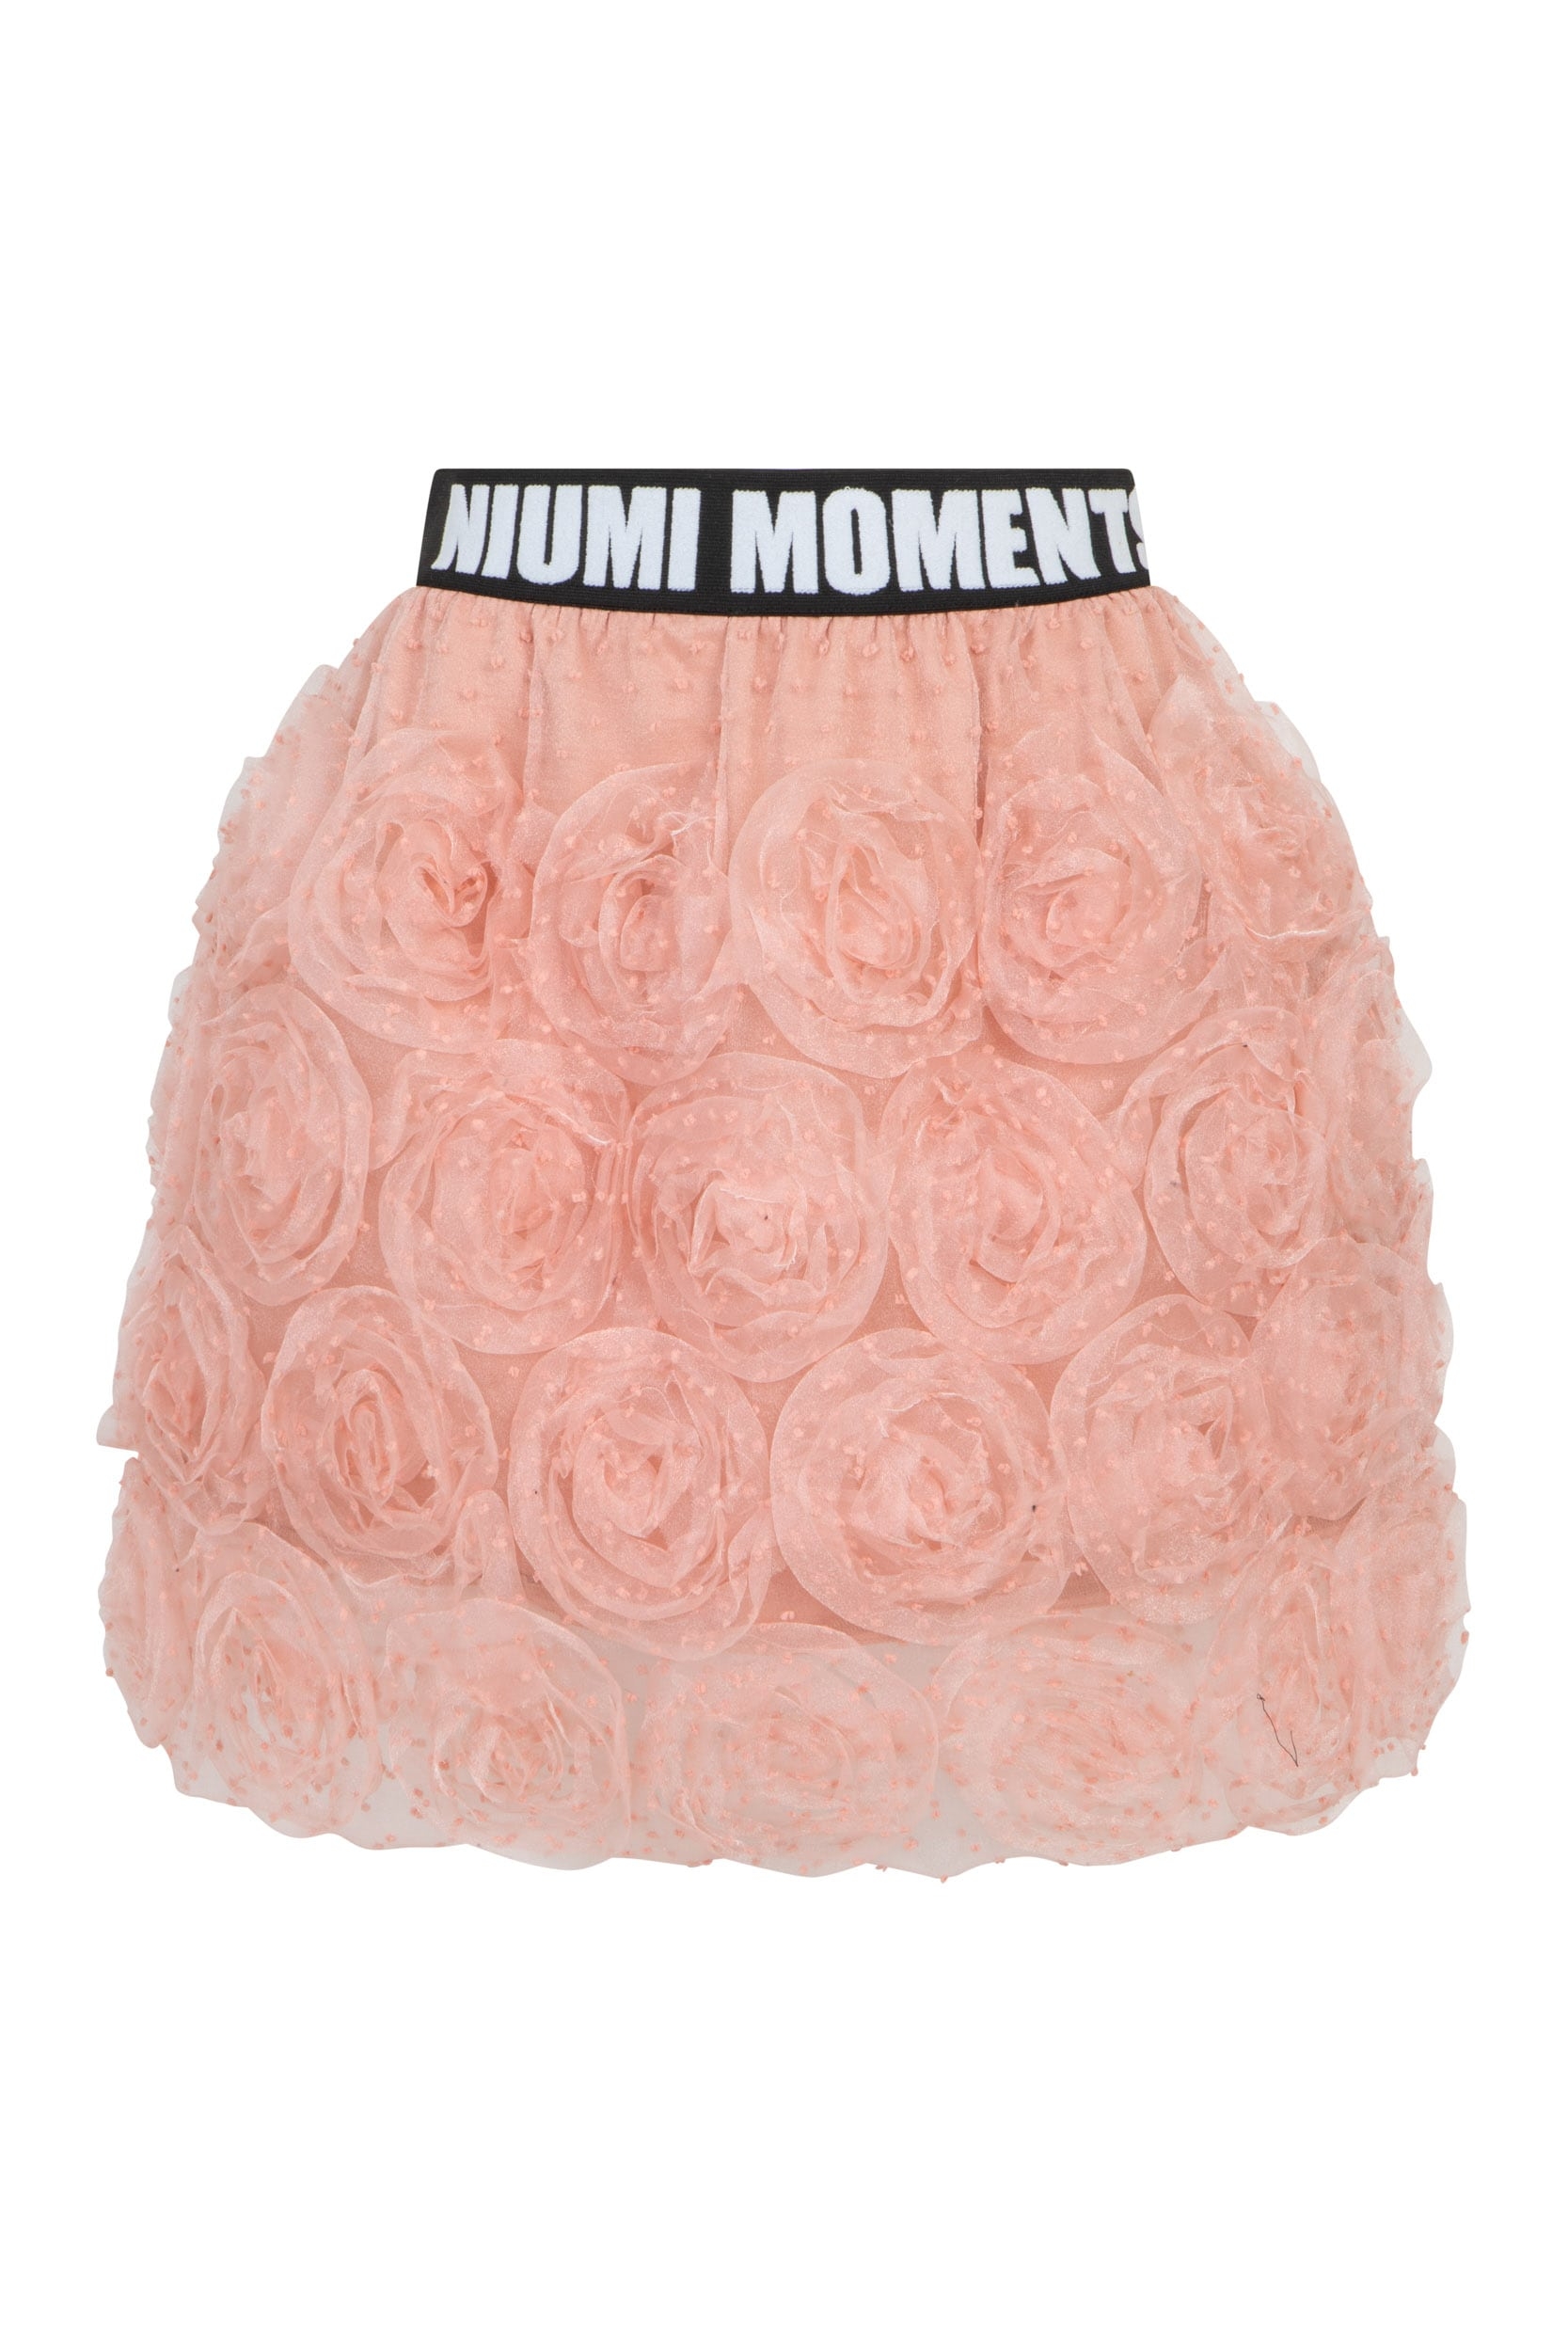 Tiulowa różowa spódnica bombka z różami i logowaną gumą Niumi